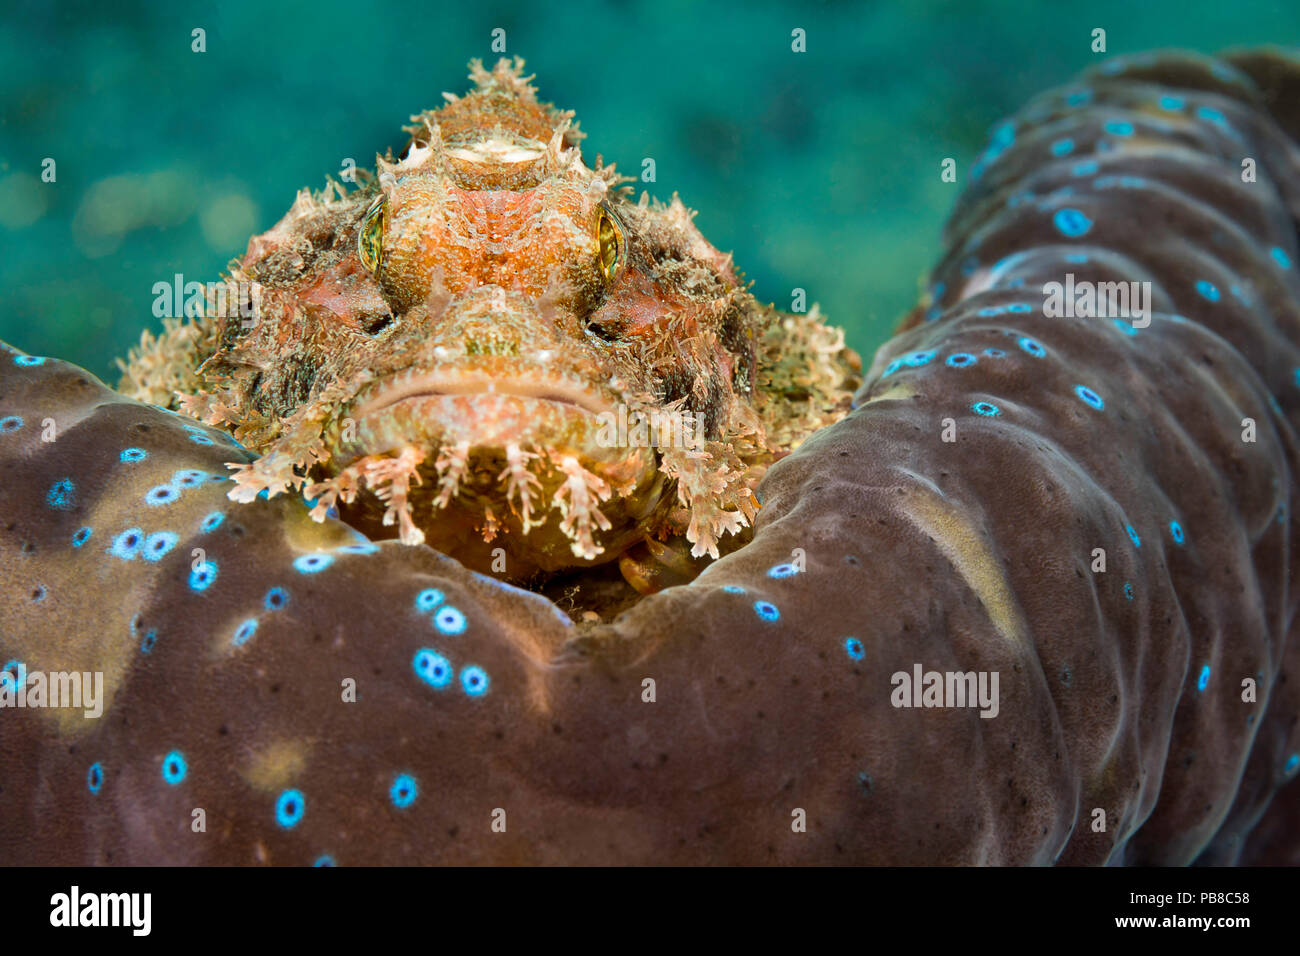 Cette Scorpaenopsis oxycephala rascasses, commune, est perché sur le rebord du manteau d'un géant tridacna clam, Tridacna gigas. Il s'agit d'épines venimeuses peuvent i Banque D'Images